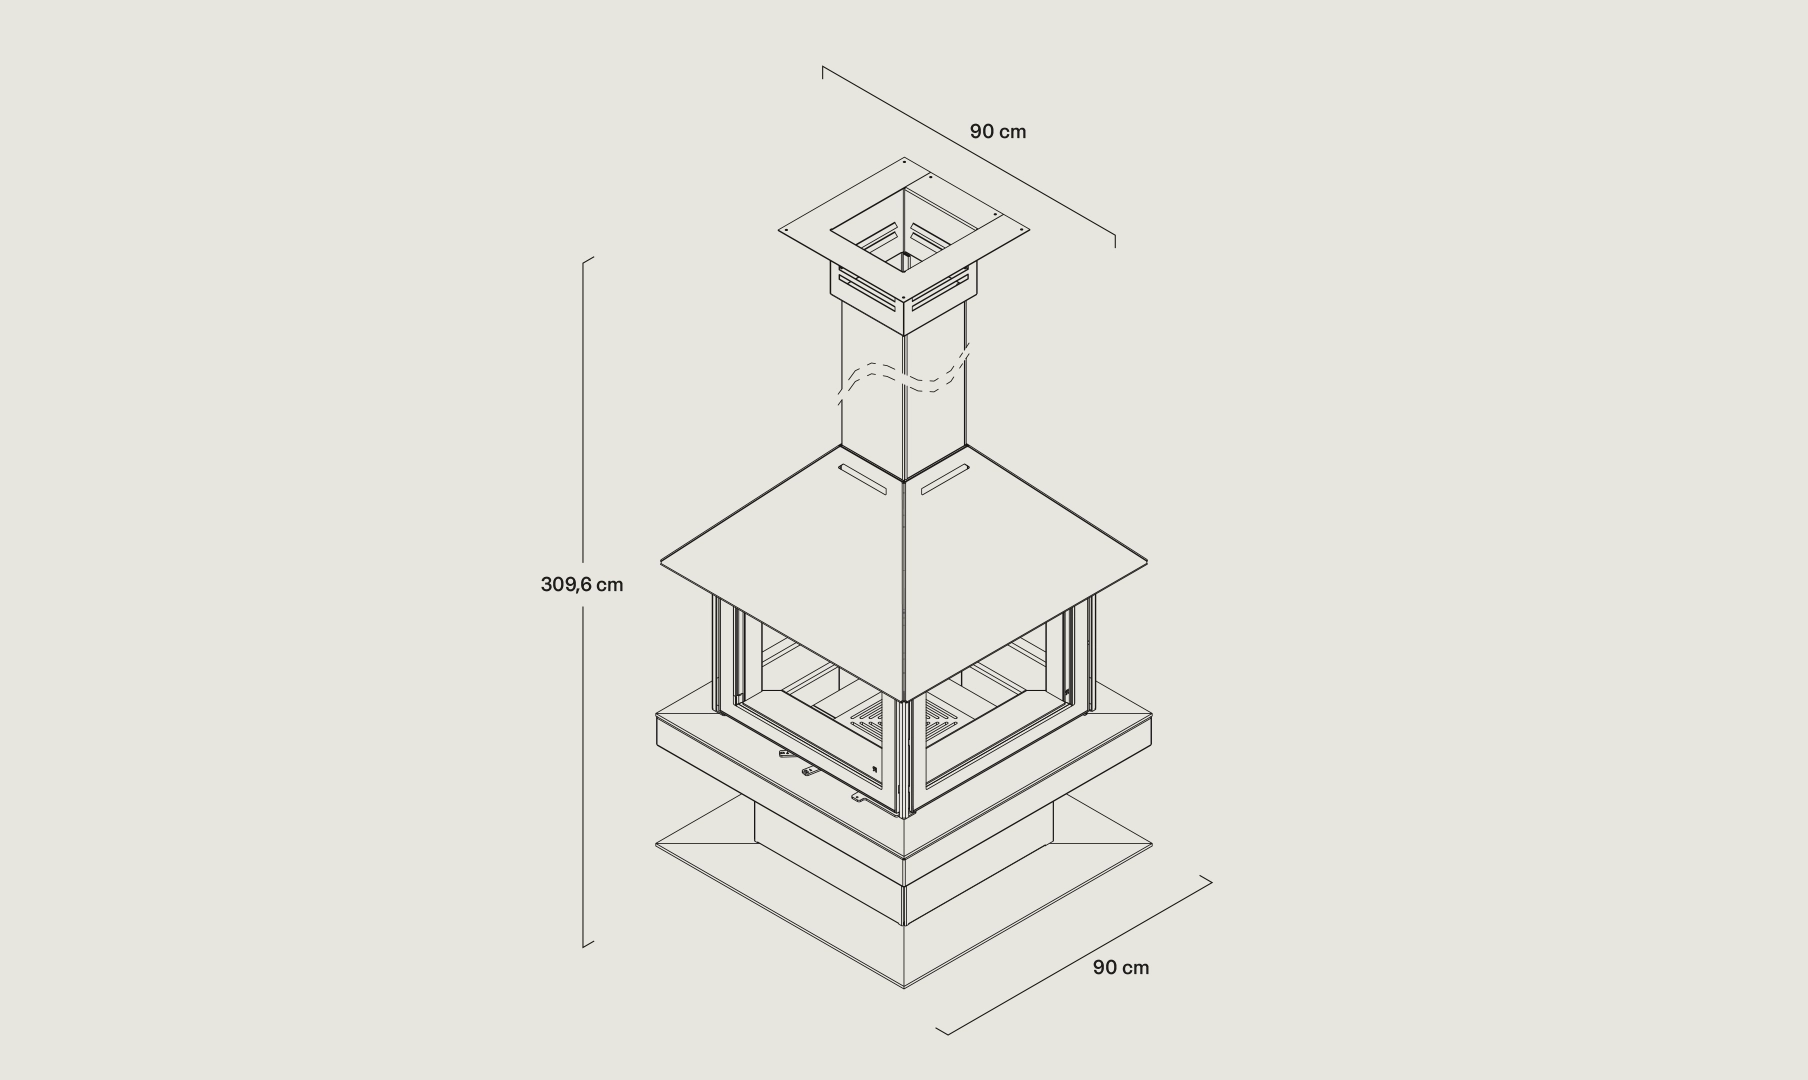 Dibujo vectorial de la chimenea Giselle 90 de Rocal con sus medidas 